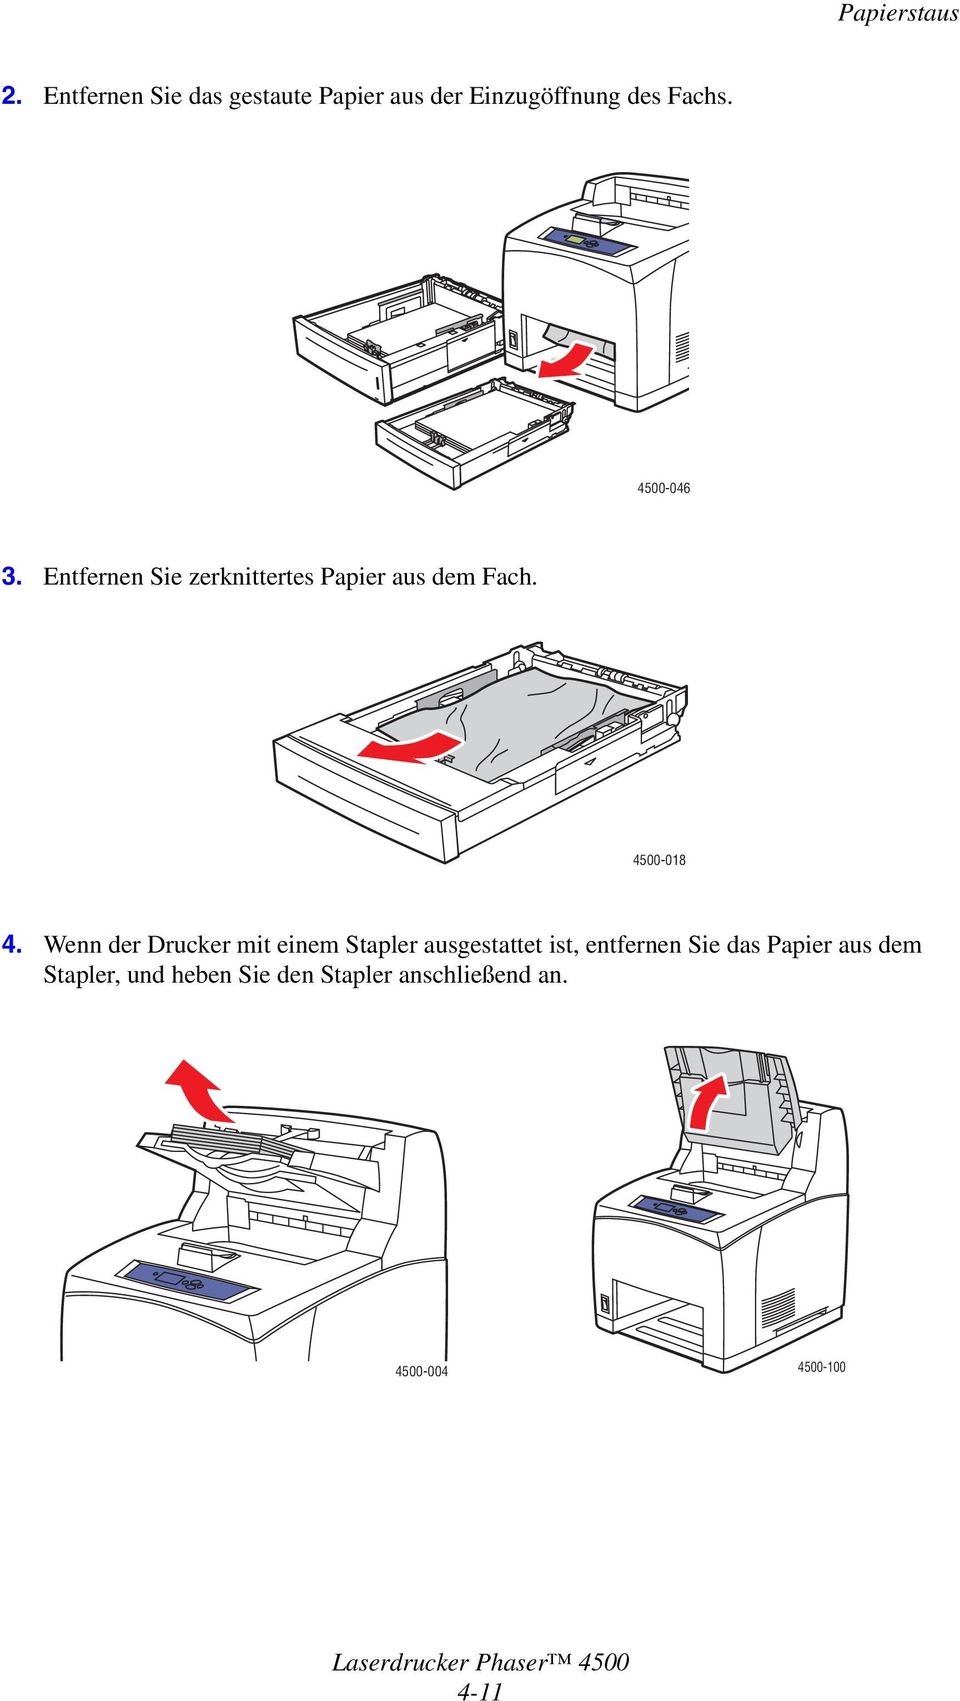 Wenn der Drucker mit einem Stapler ausgestattet ist, entfernen Sie das